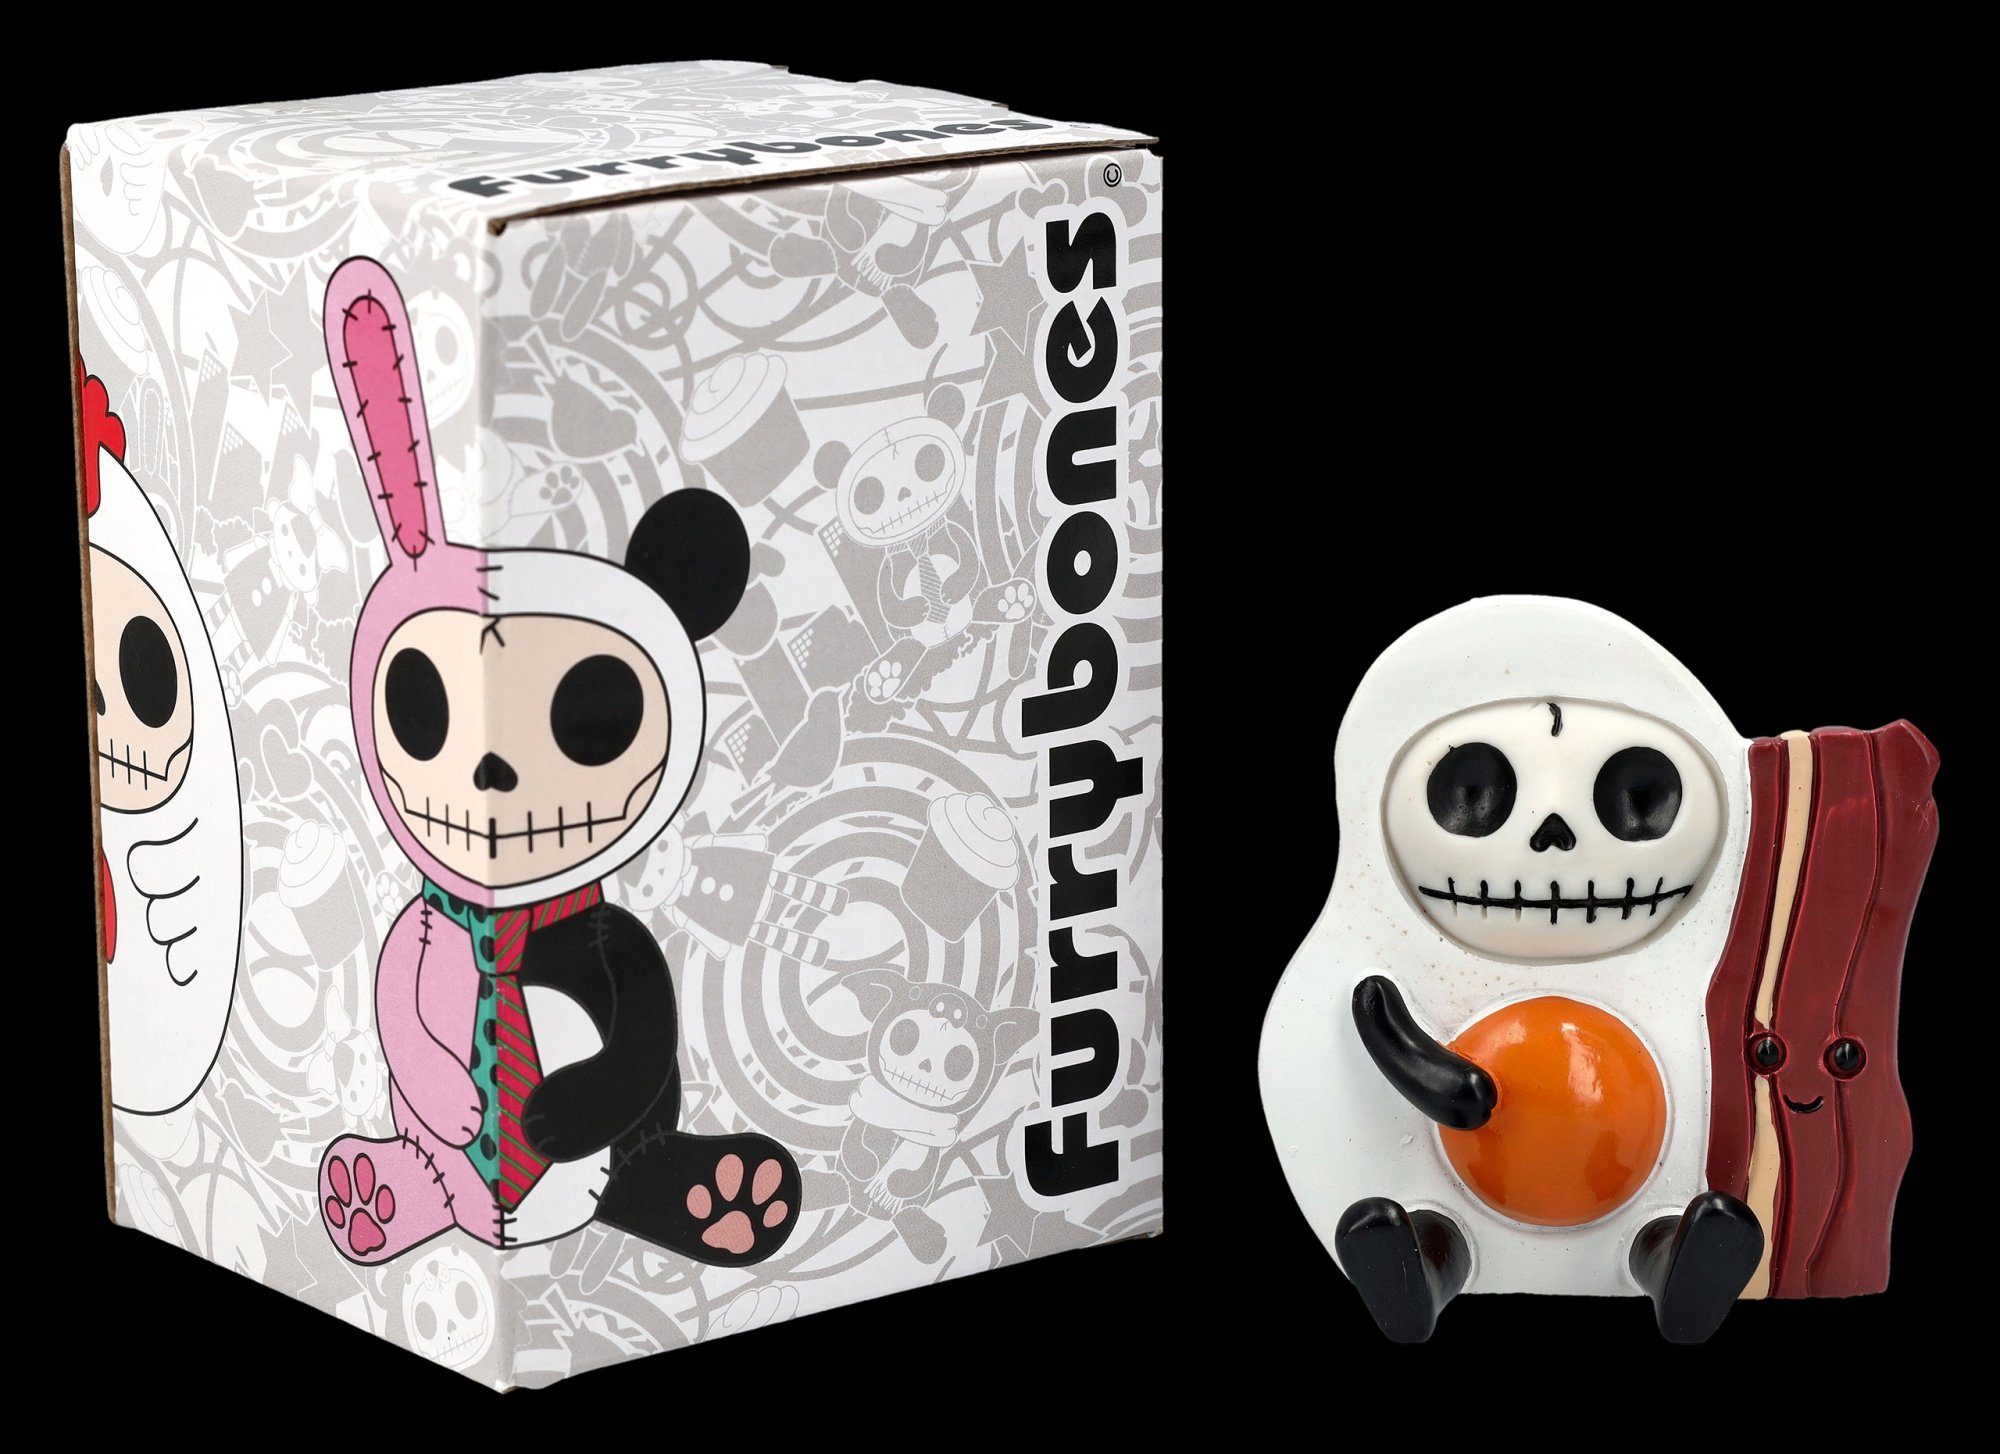 Dekofigur - Shop Figur - Fantasy Egg Figuren Up Furrybones Side Sunny Spiegelei Dekoration GmbH Gothic